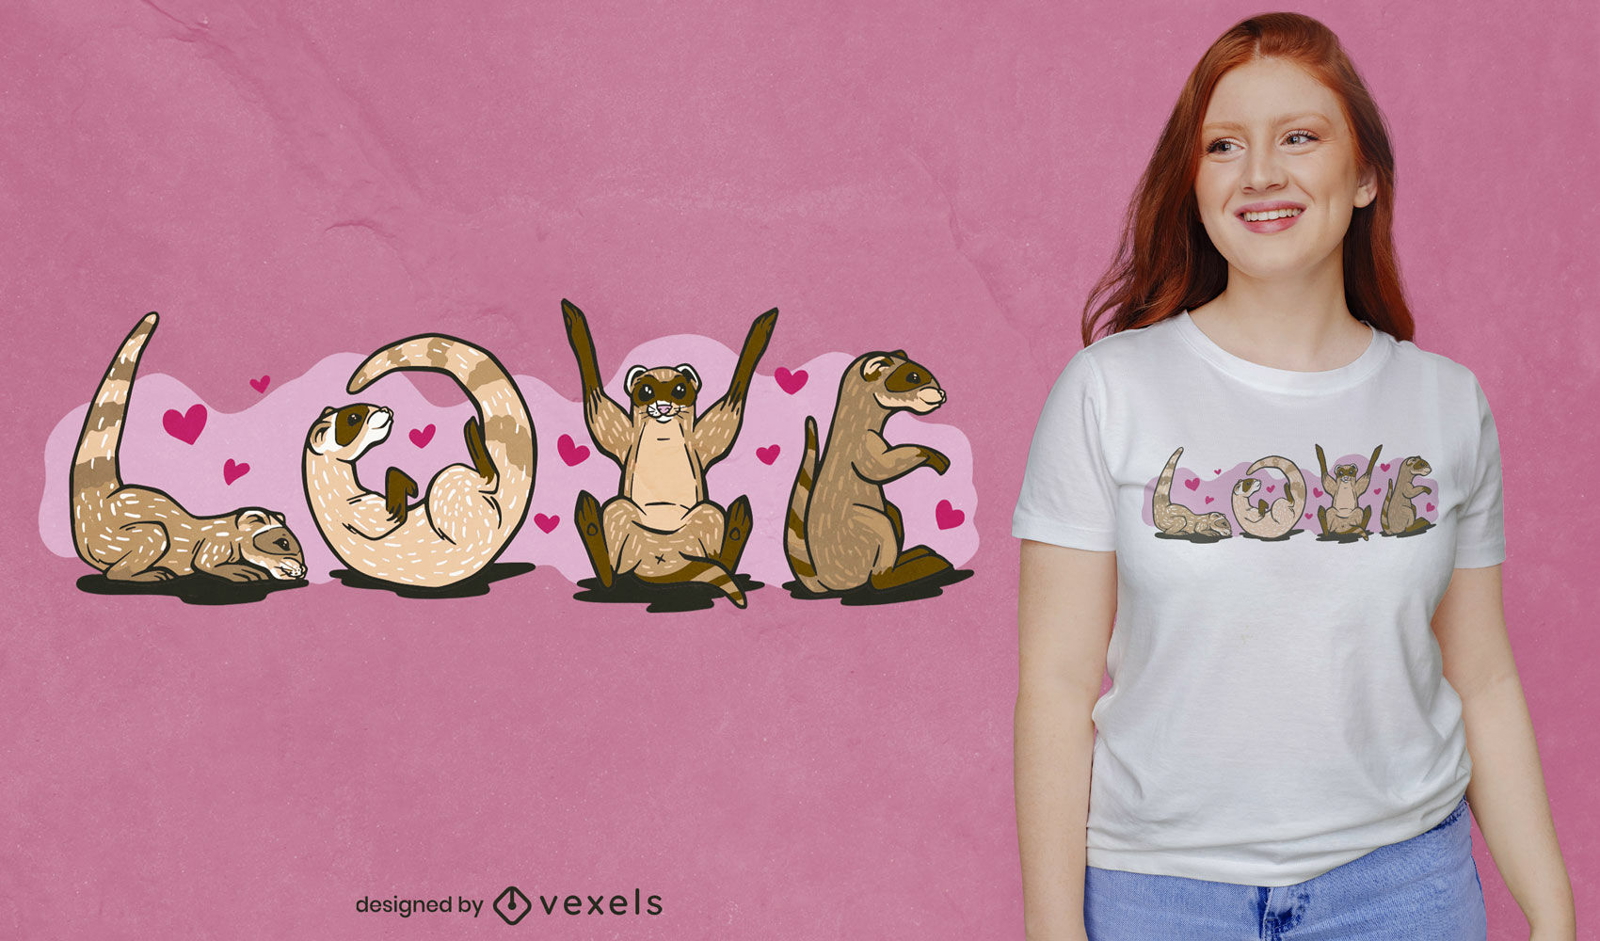 Animais fur?es adoram design de camiseta com cita??o